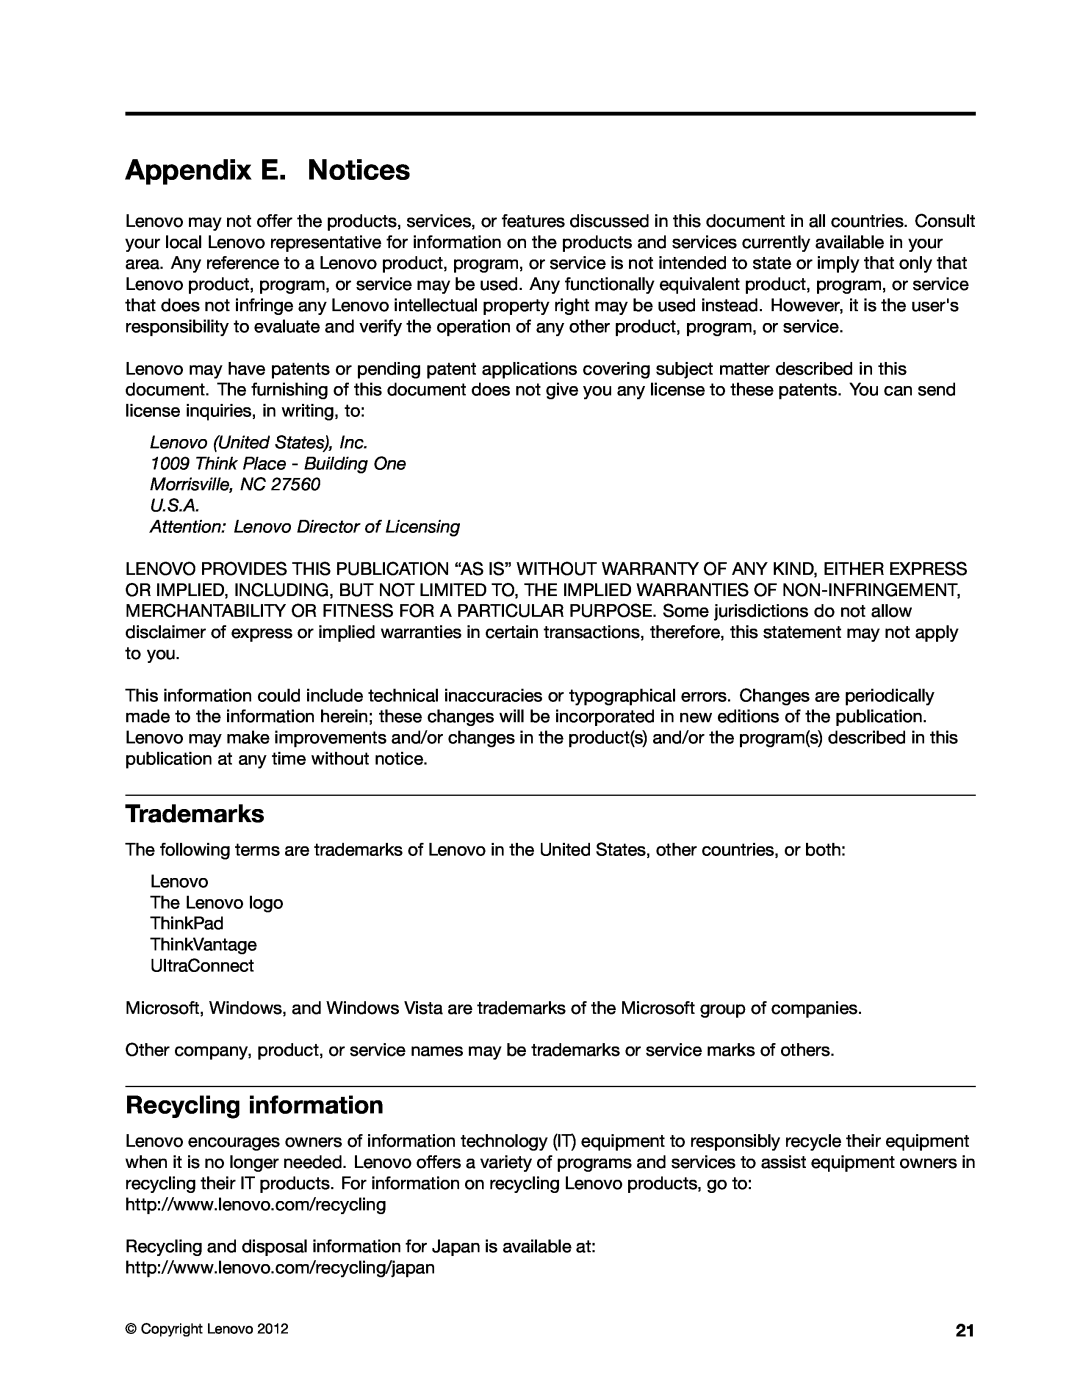 Lenovo GOBI 4000 manual Appendix E. Notices, Trademarks, Recycling information 